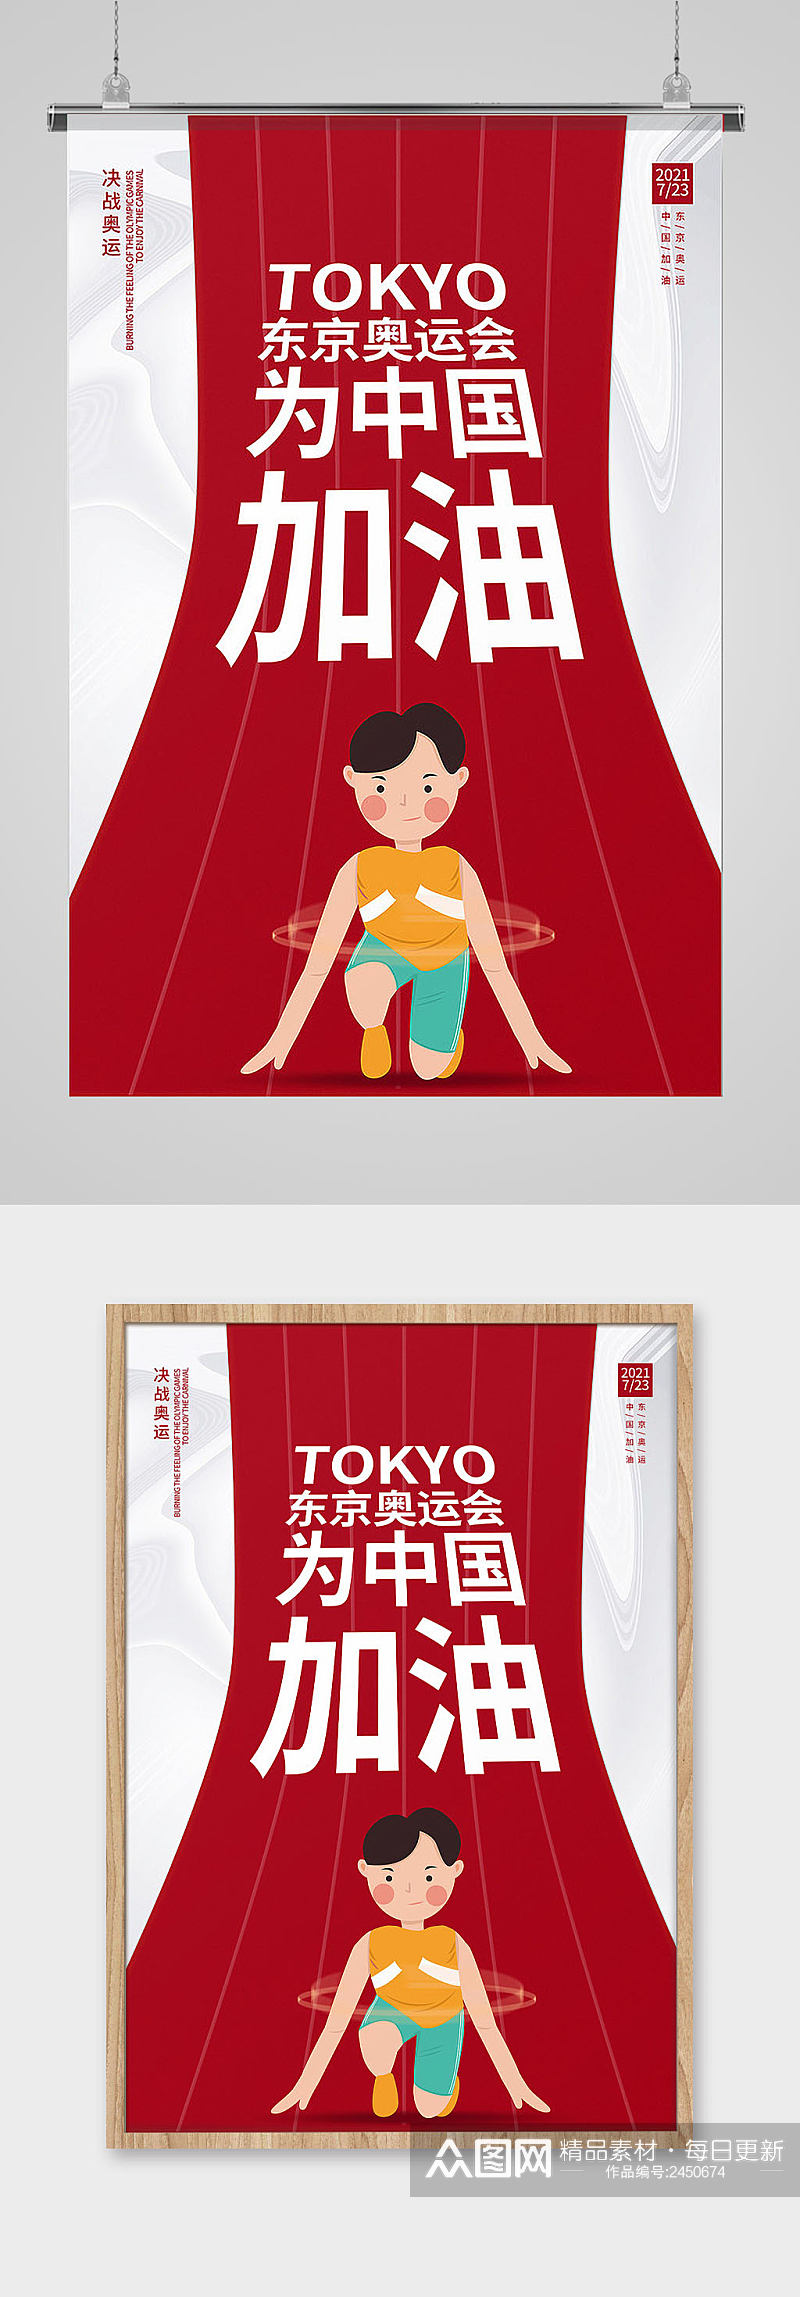 东京奥运会加油海报背景素材